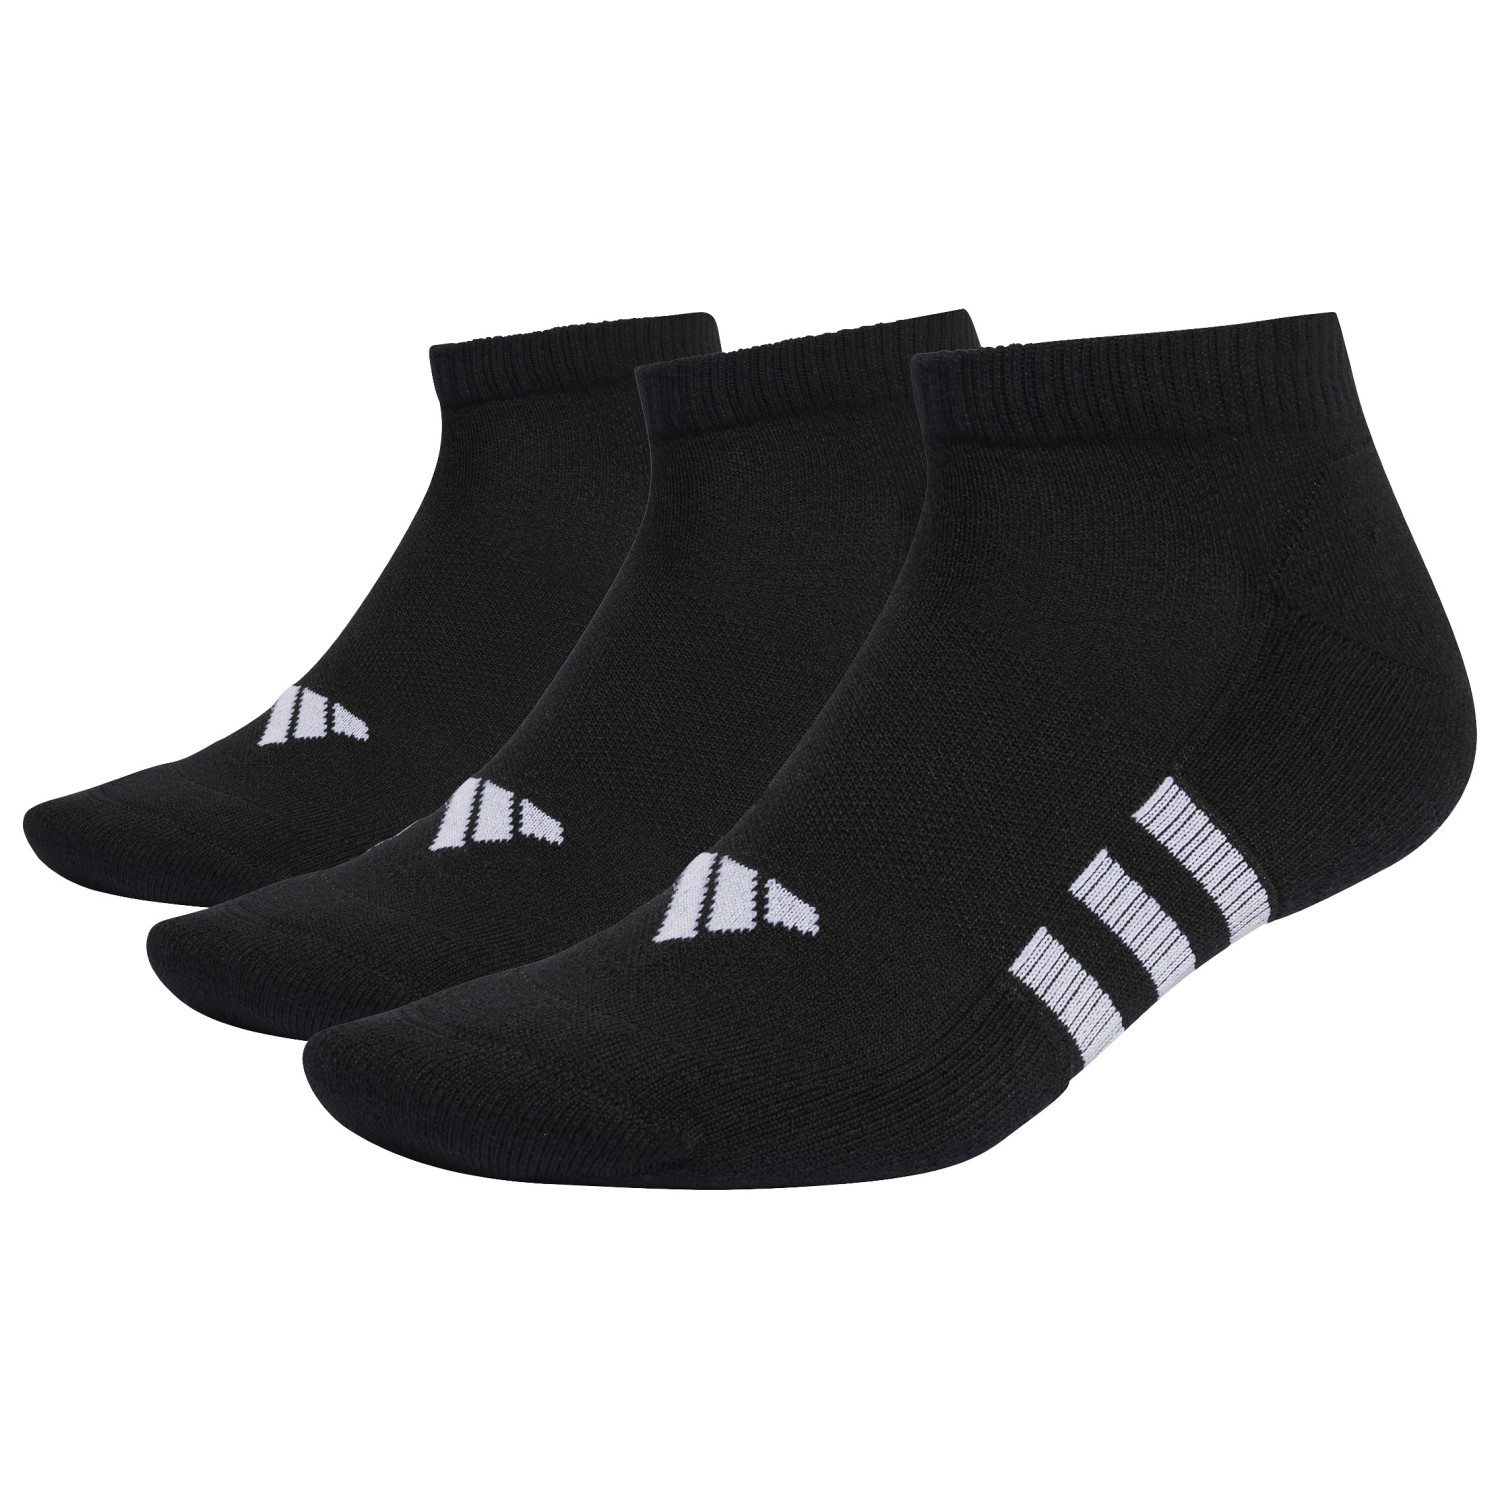 Многофункциональные носки Adidas Performance Cushioned Low 3 Pack, цвет Black/Black/Black цена и фото